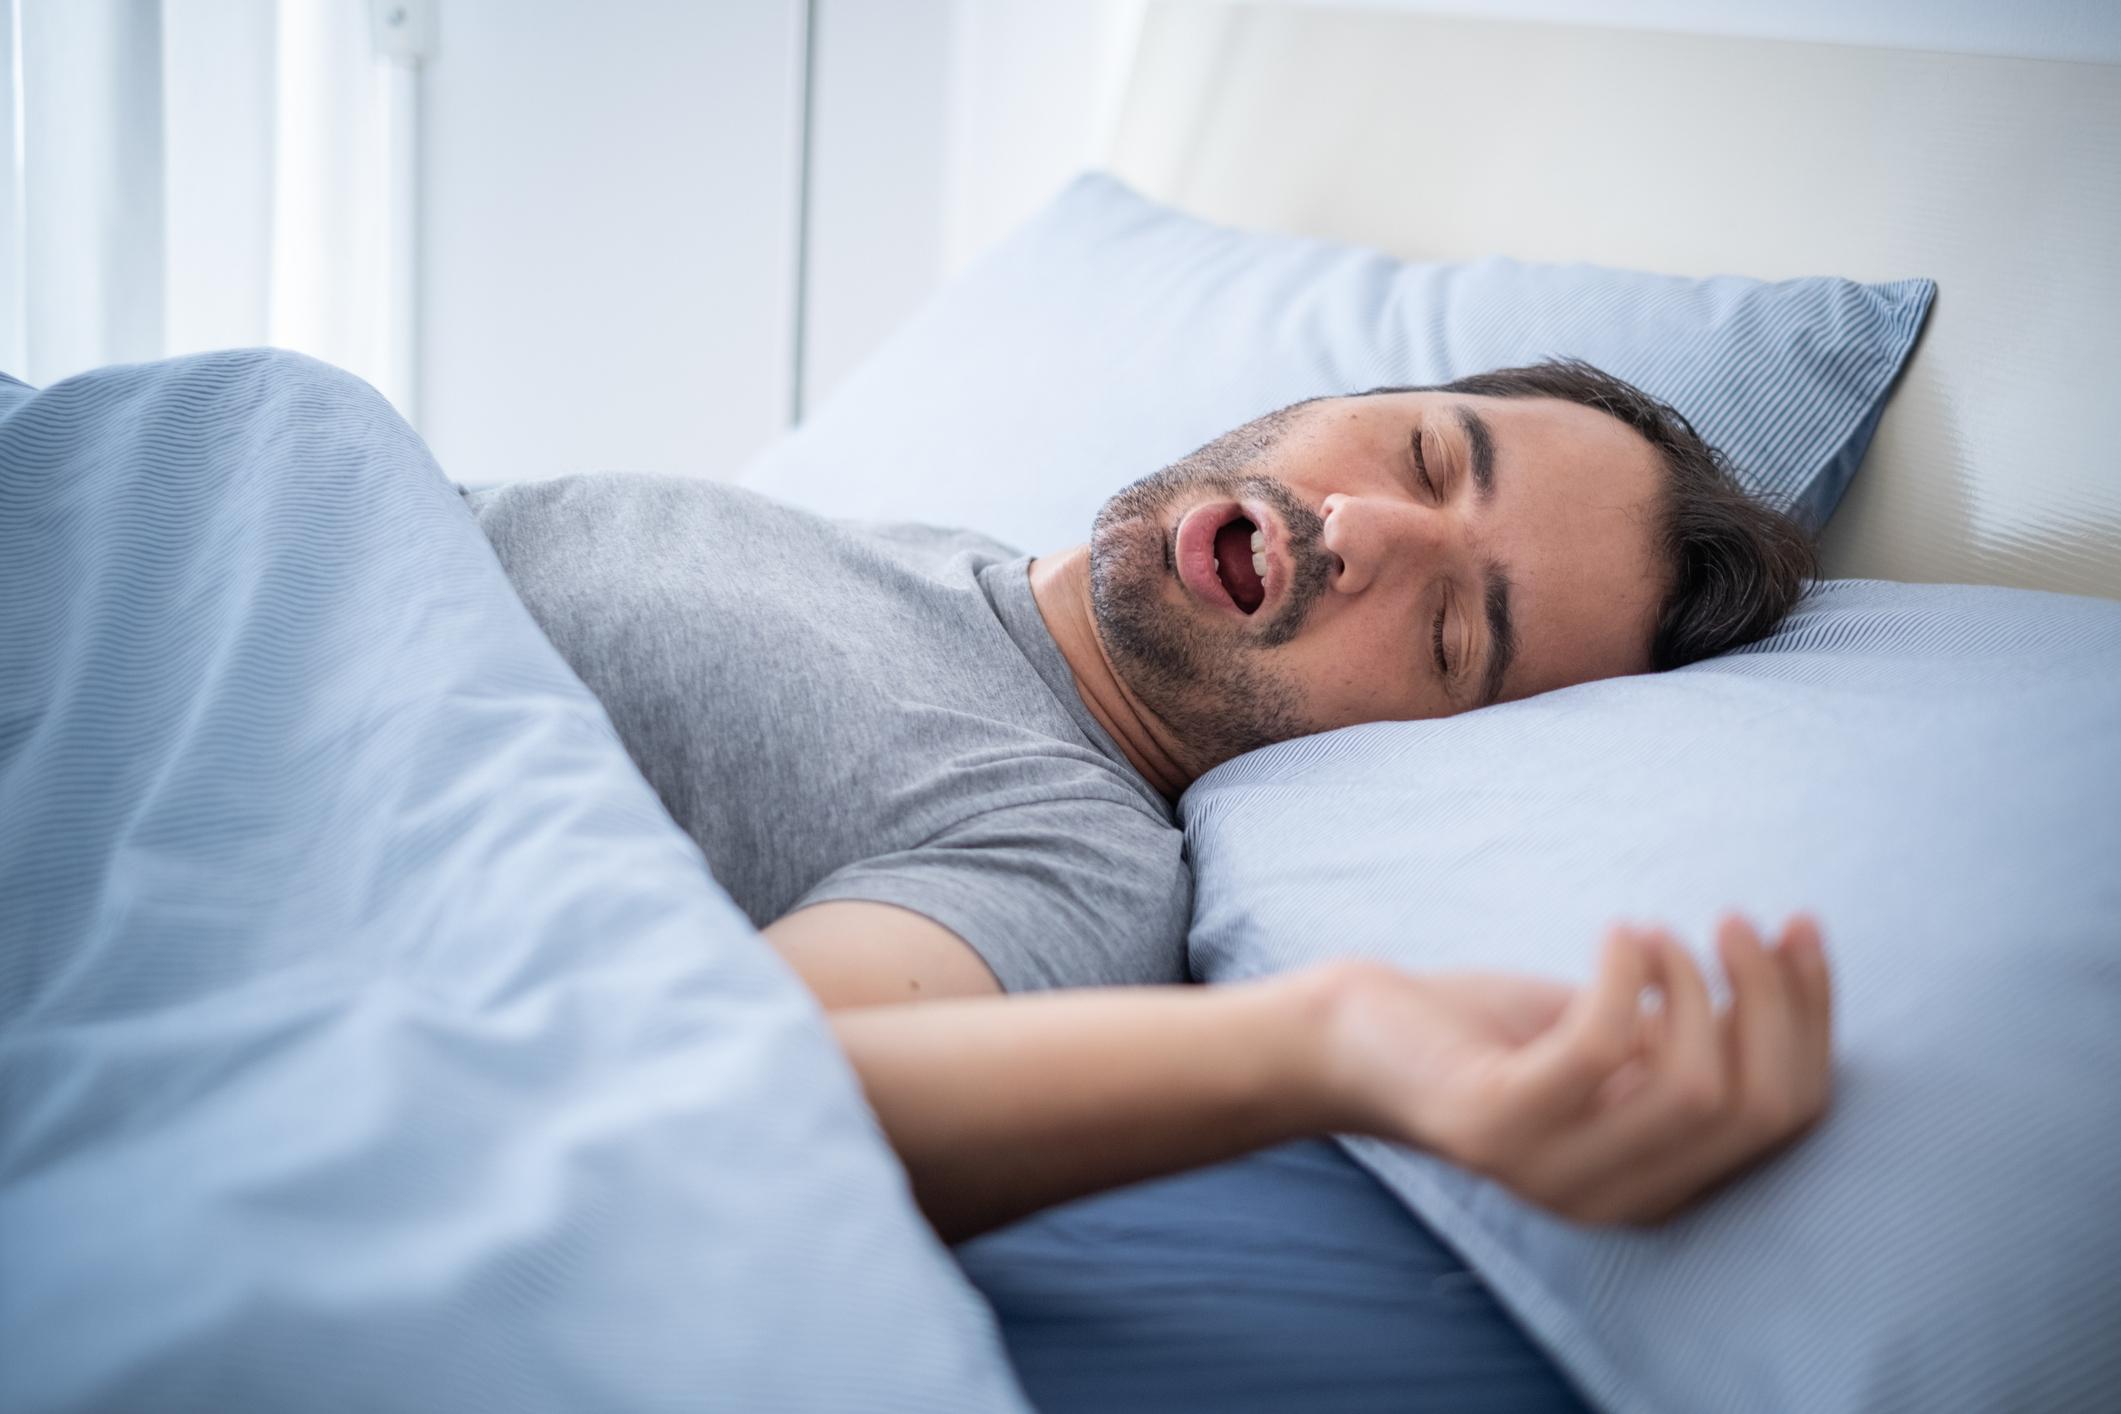 Apnée du sommeil : les symptômes sont liés à des problèmes de mémoire et de réflexion